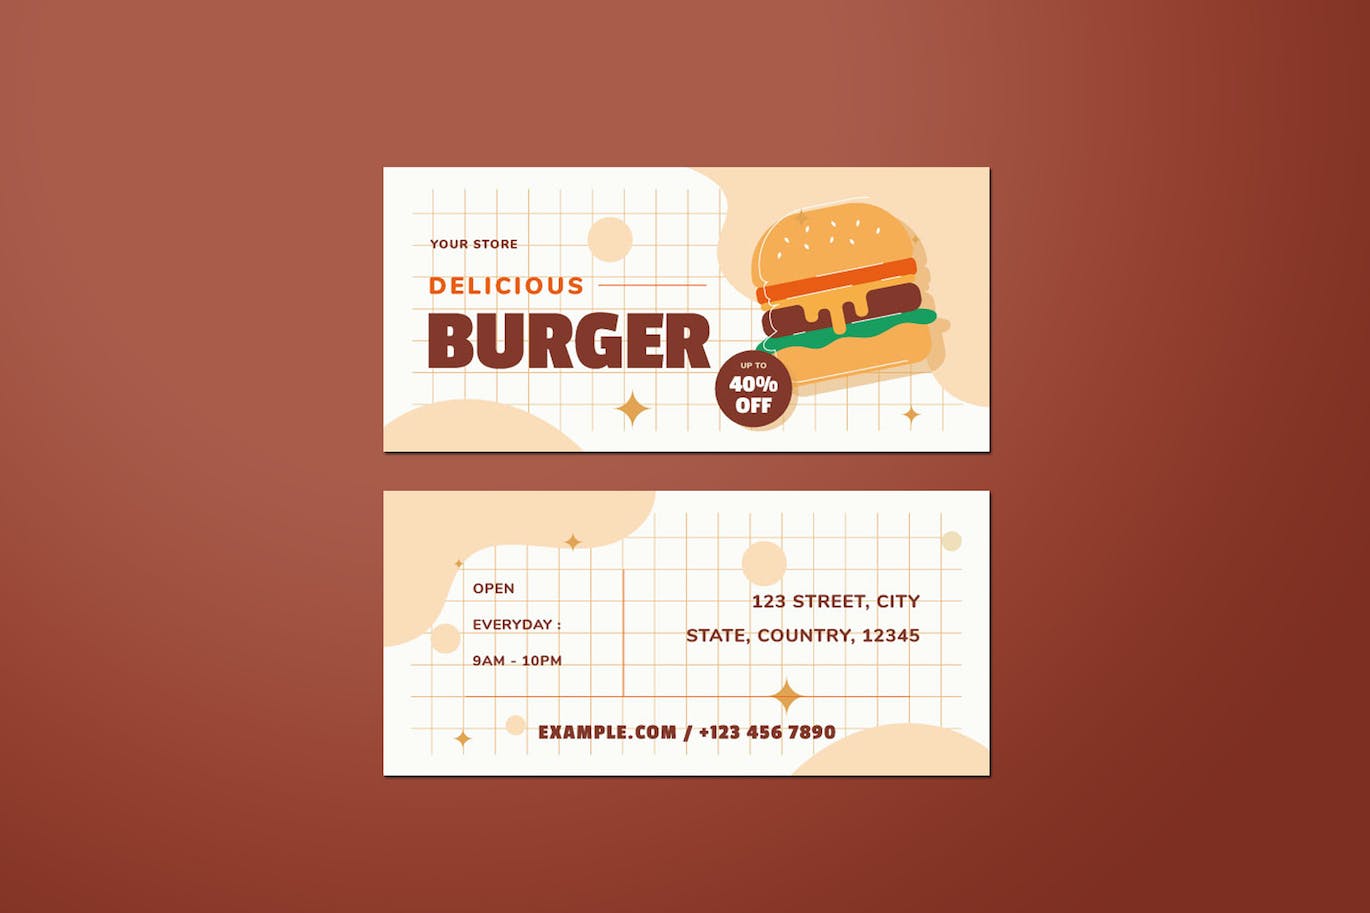 汉堡销售DL传单设计模板 Burger Sale DL Flyer 设计素材 第2张